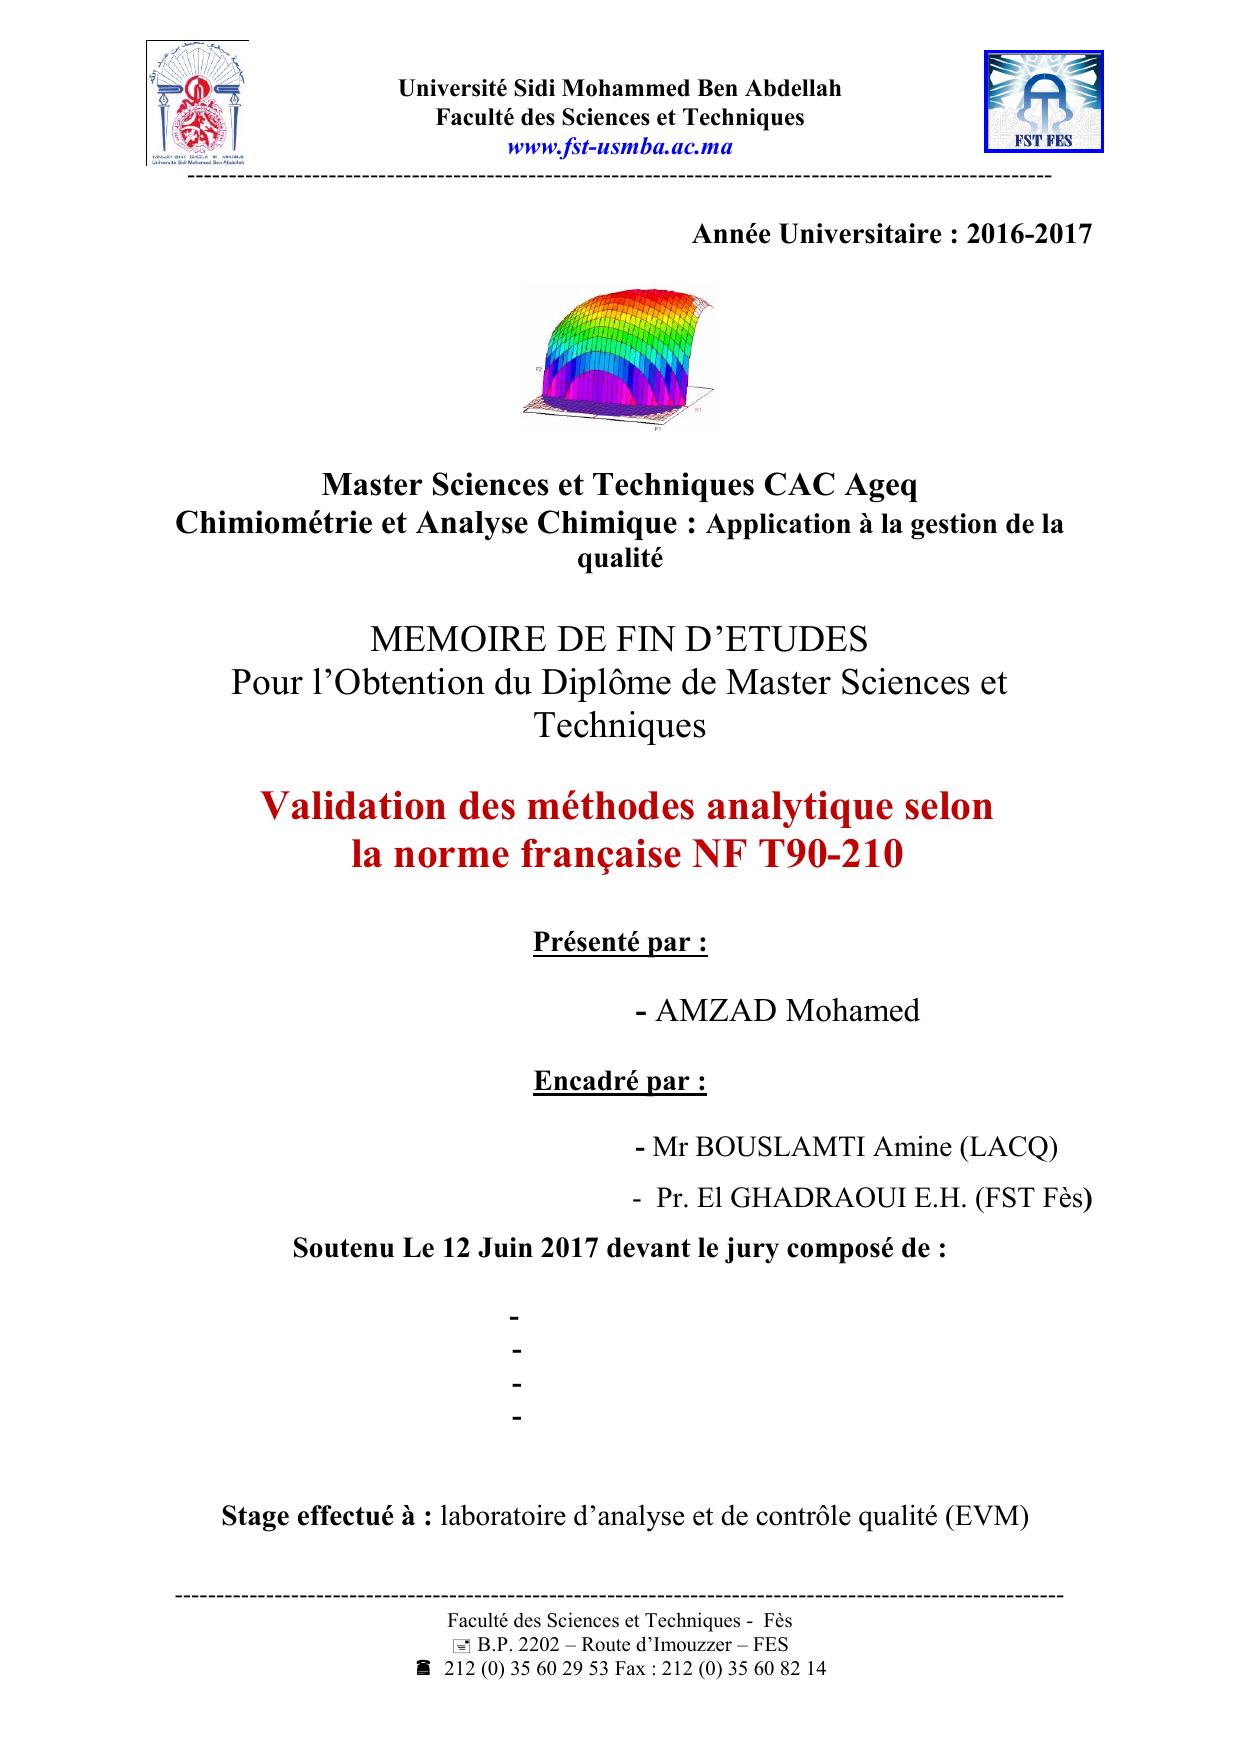 Validation des méthodes analytique selon la norme française NF T90-210